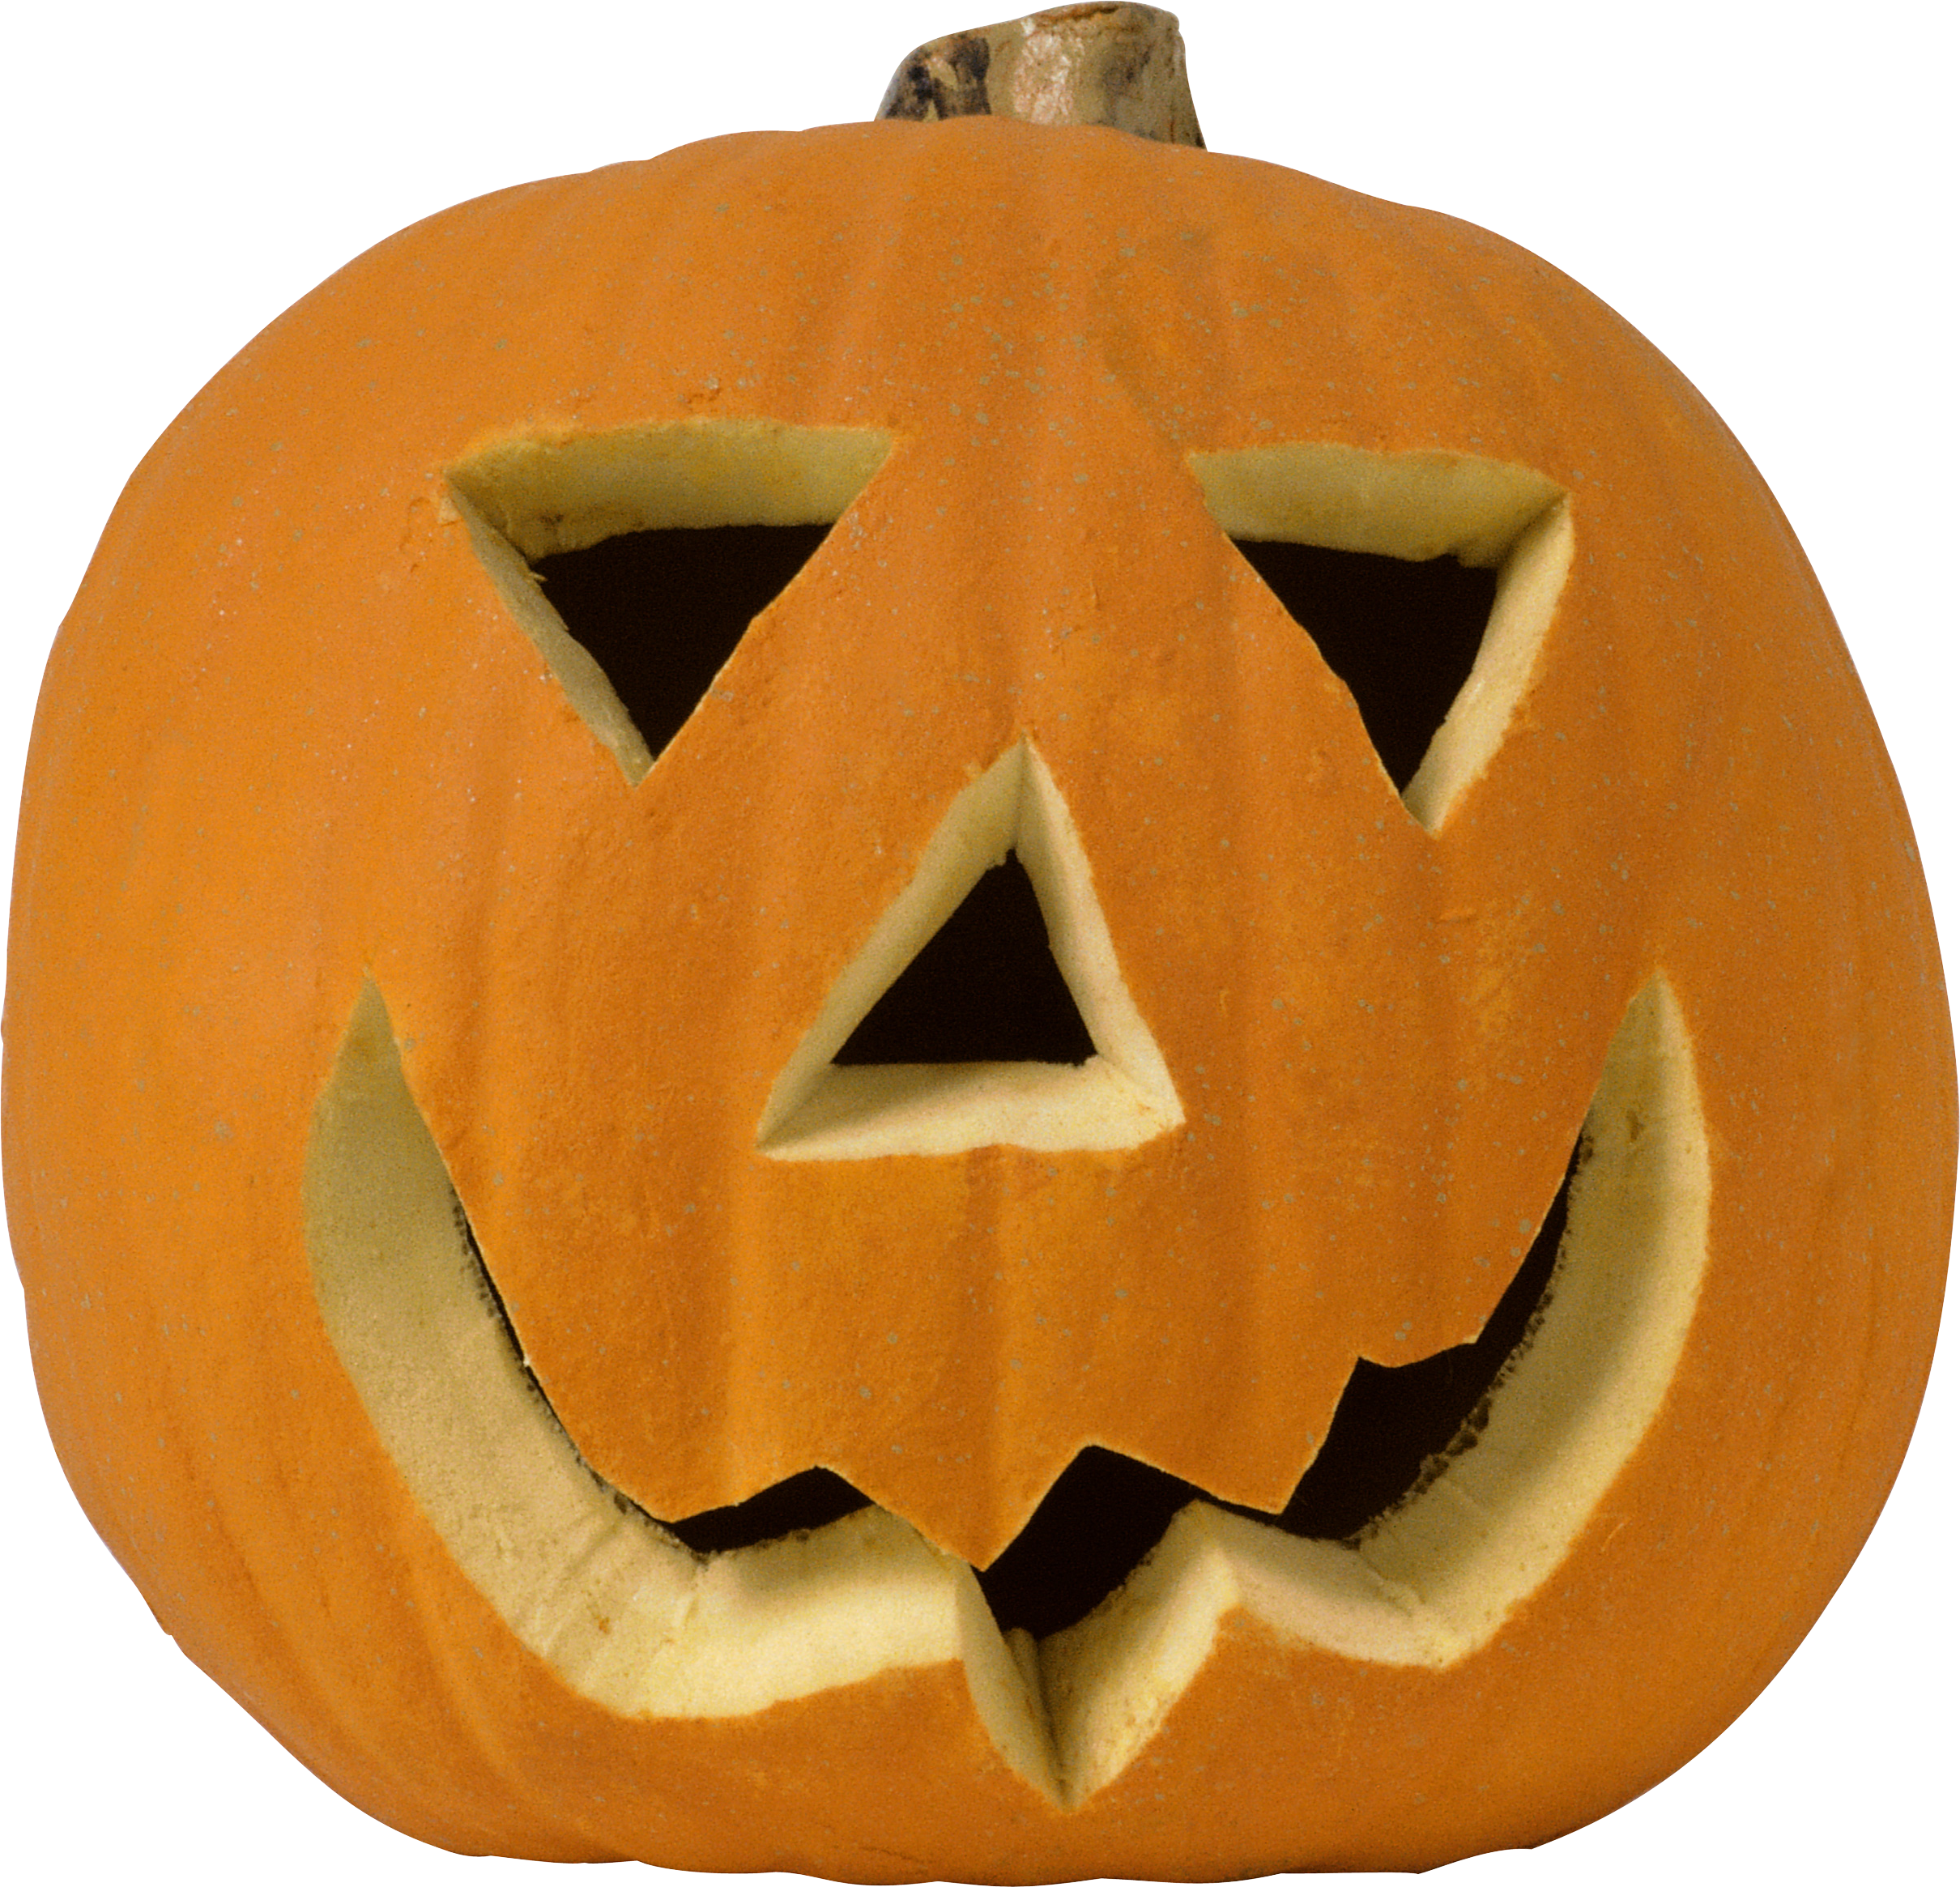 Halloween pumpkin PNG image